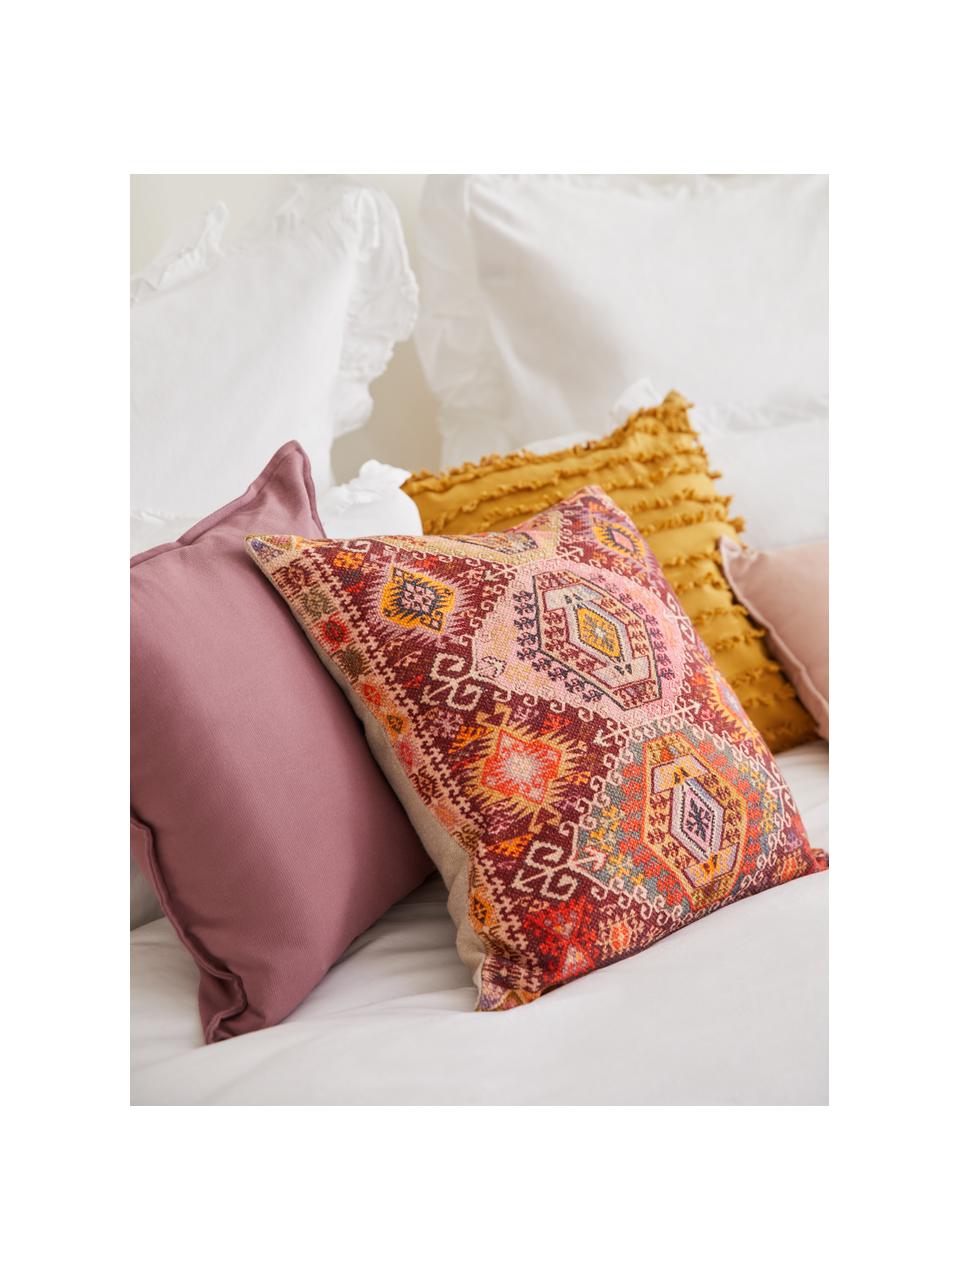 Poszewka na poduszkę z bawełny w stylu etno Tarso, Bawełna, Czerwony, blady różowy, pomarańczowy, beżowy, S 45 x D 45 cm